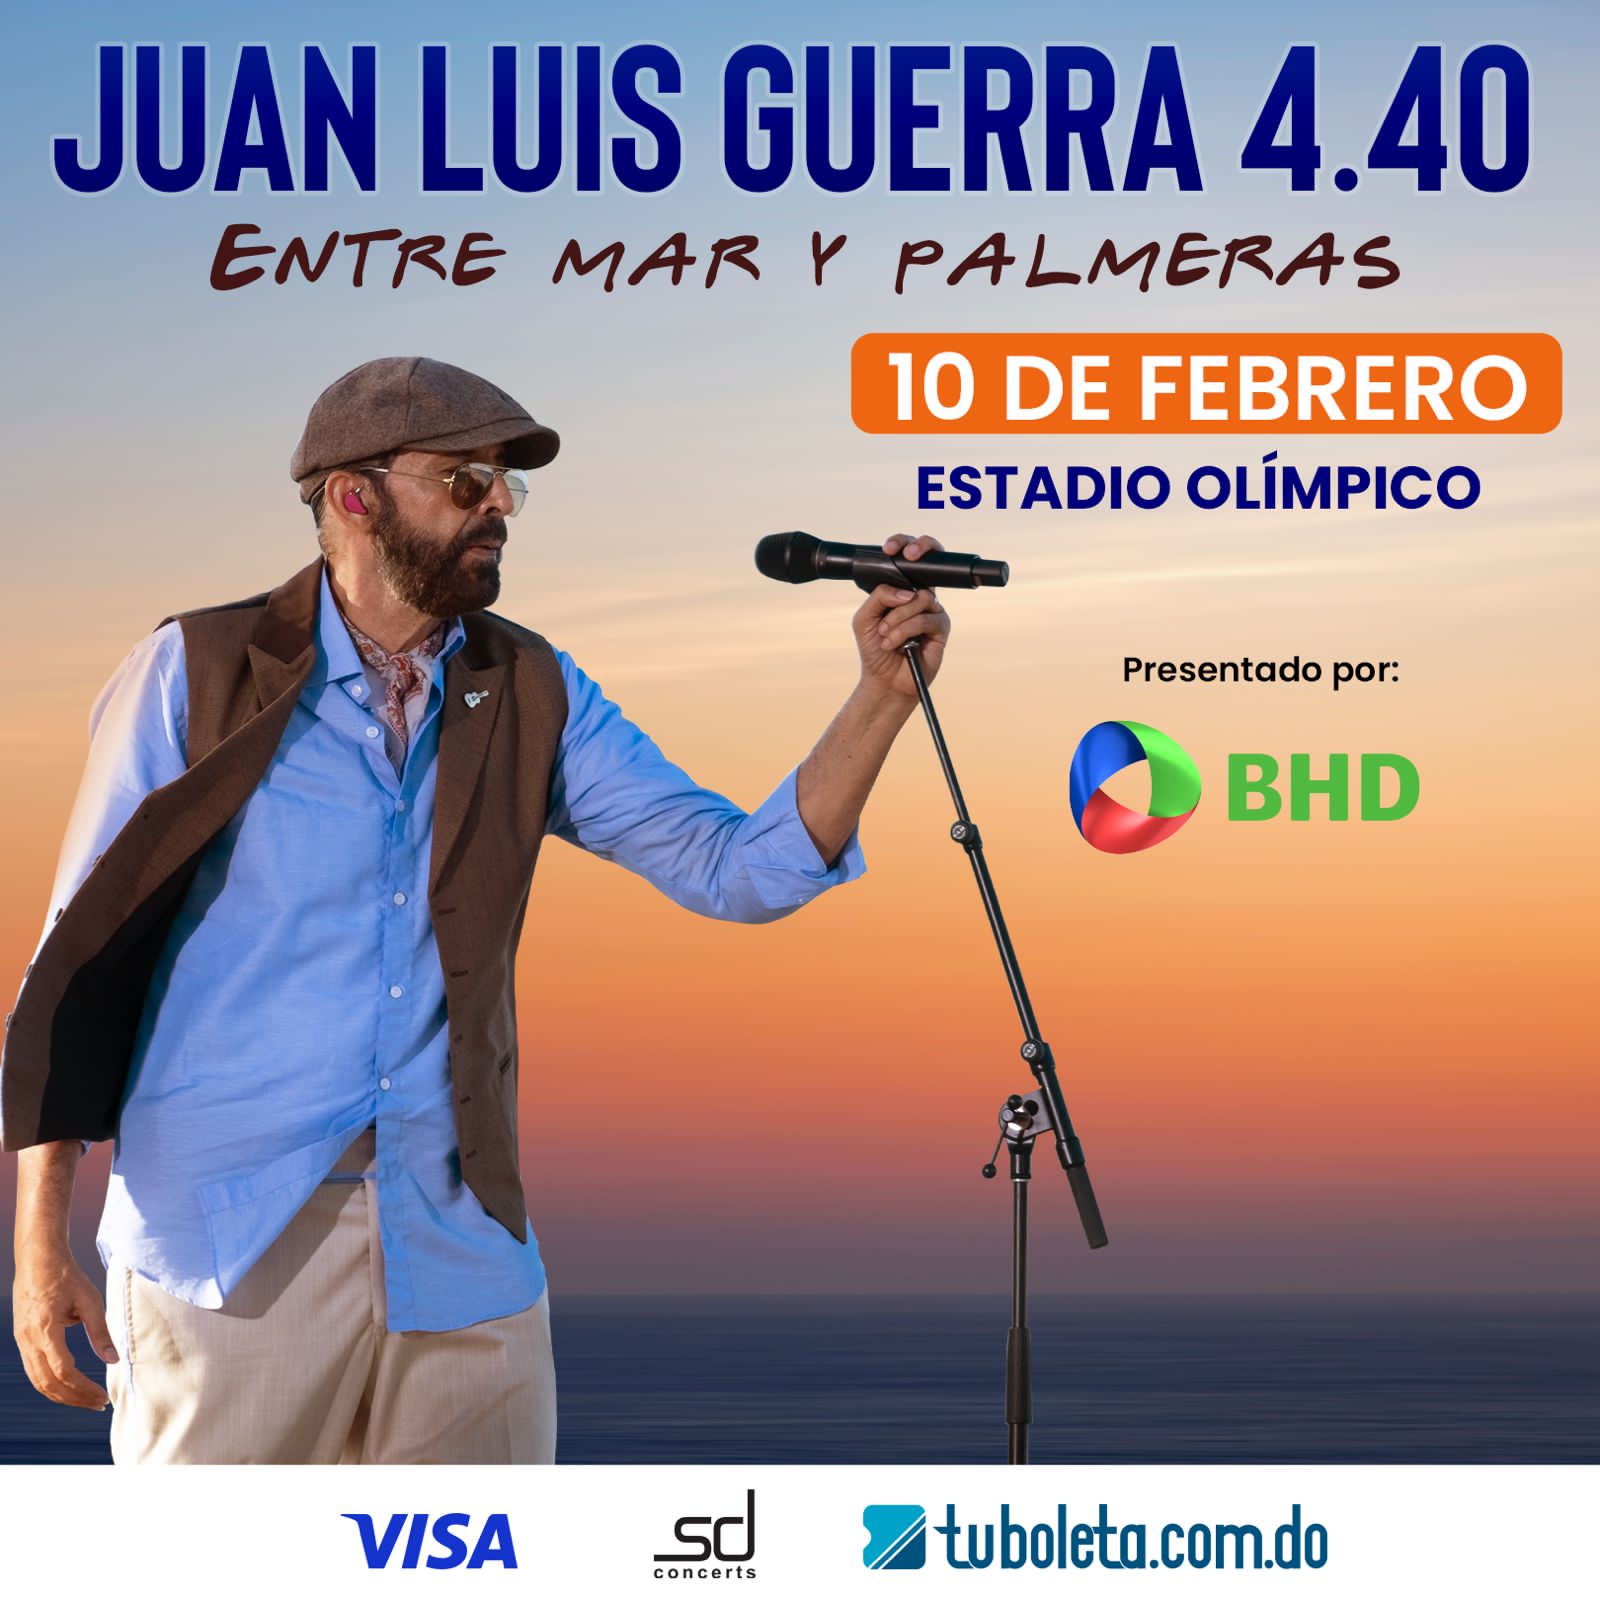 Boletas para concierto de Juan Luis Guerra podrán ser adquiridas con 25